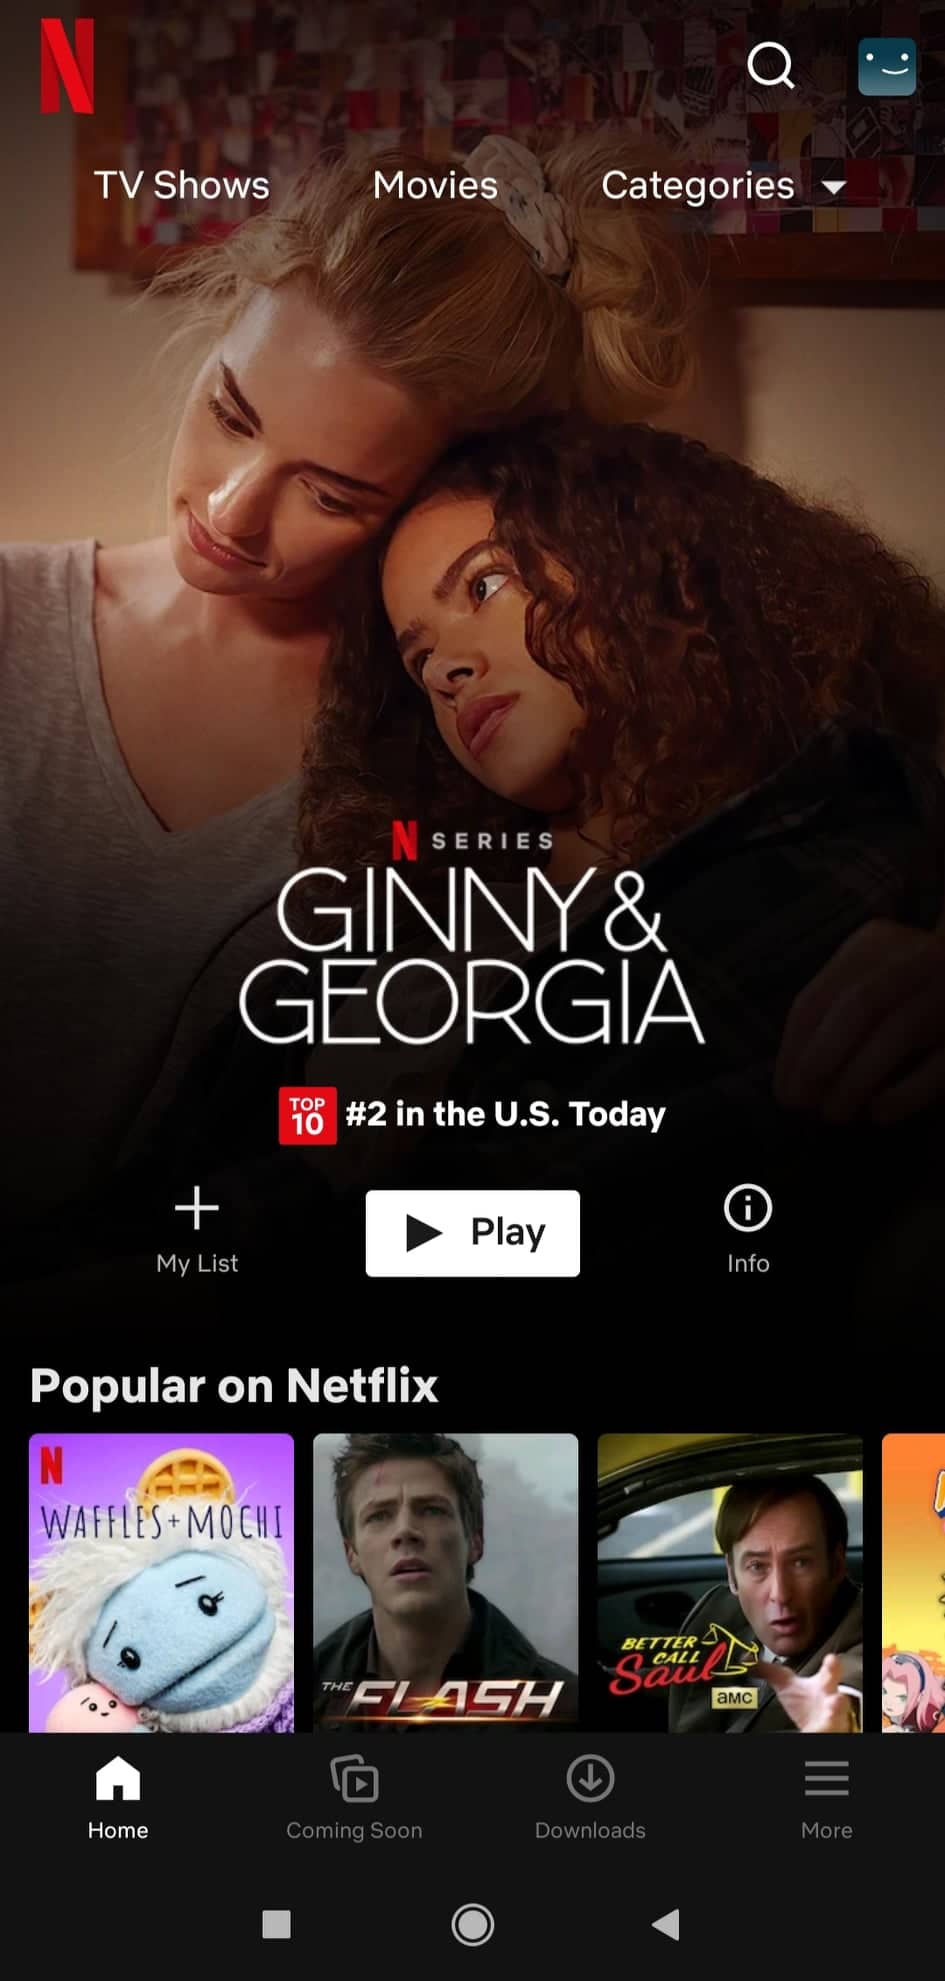 Netflix-App-Interface-